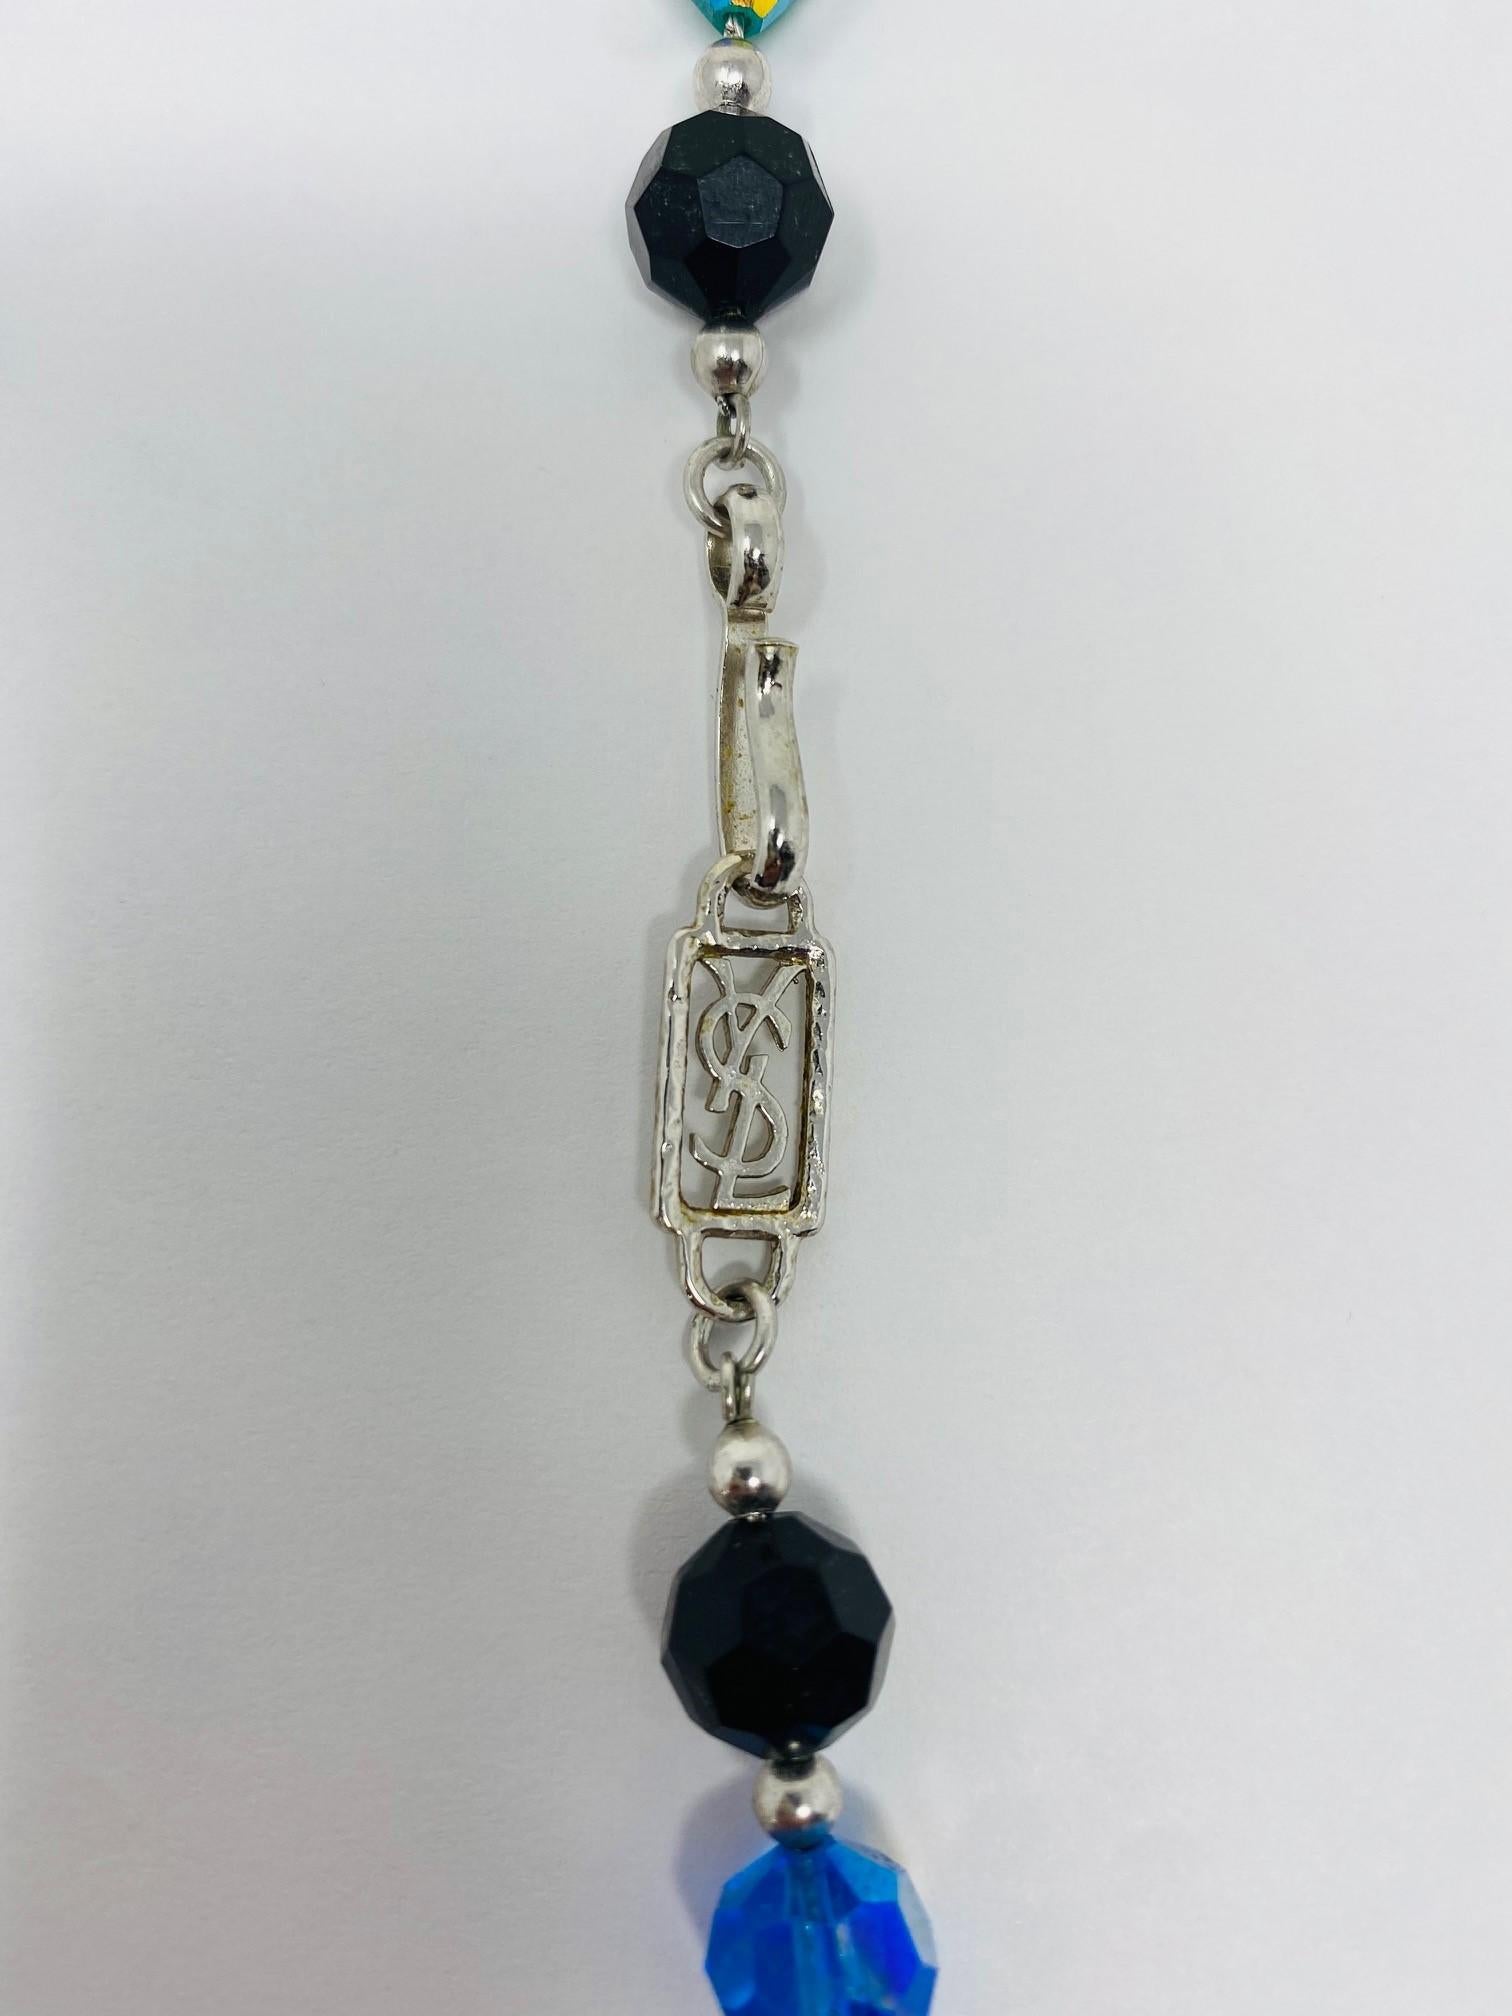 Unique et rare collier vintage YSL (Yves Saint Laurent) de style opéra en perles de cristal facettées de couleur.  Ce magnifique collier est construit et façonné selon l'héritage Haute Couture d'YSL en matière de joaillerie.  Les perles de cristal